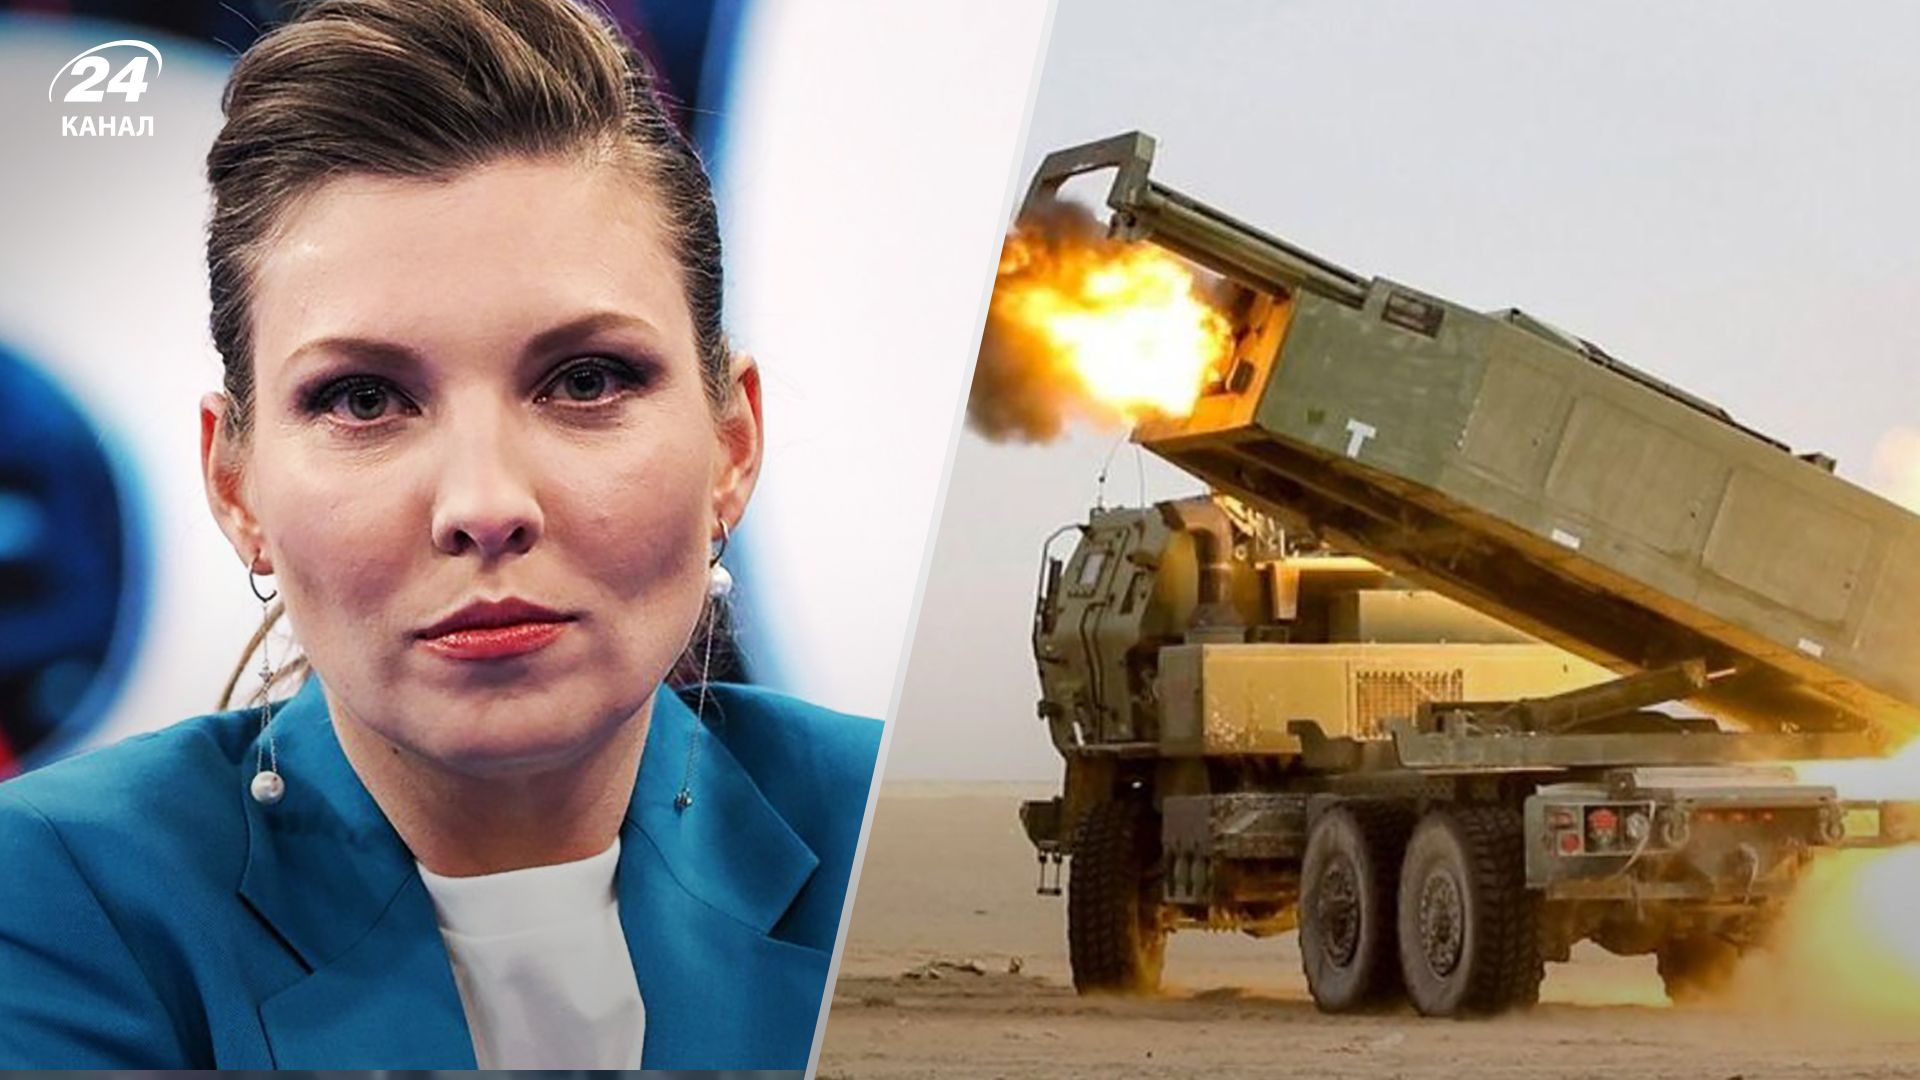 Скабєєва почала хвалити американську зброю - деталі заяви кремлівської пропагандистки